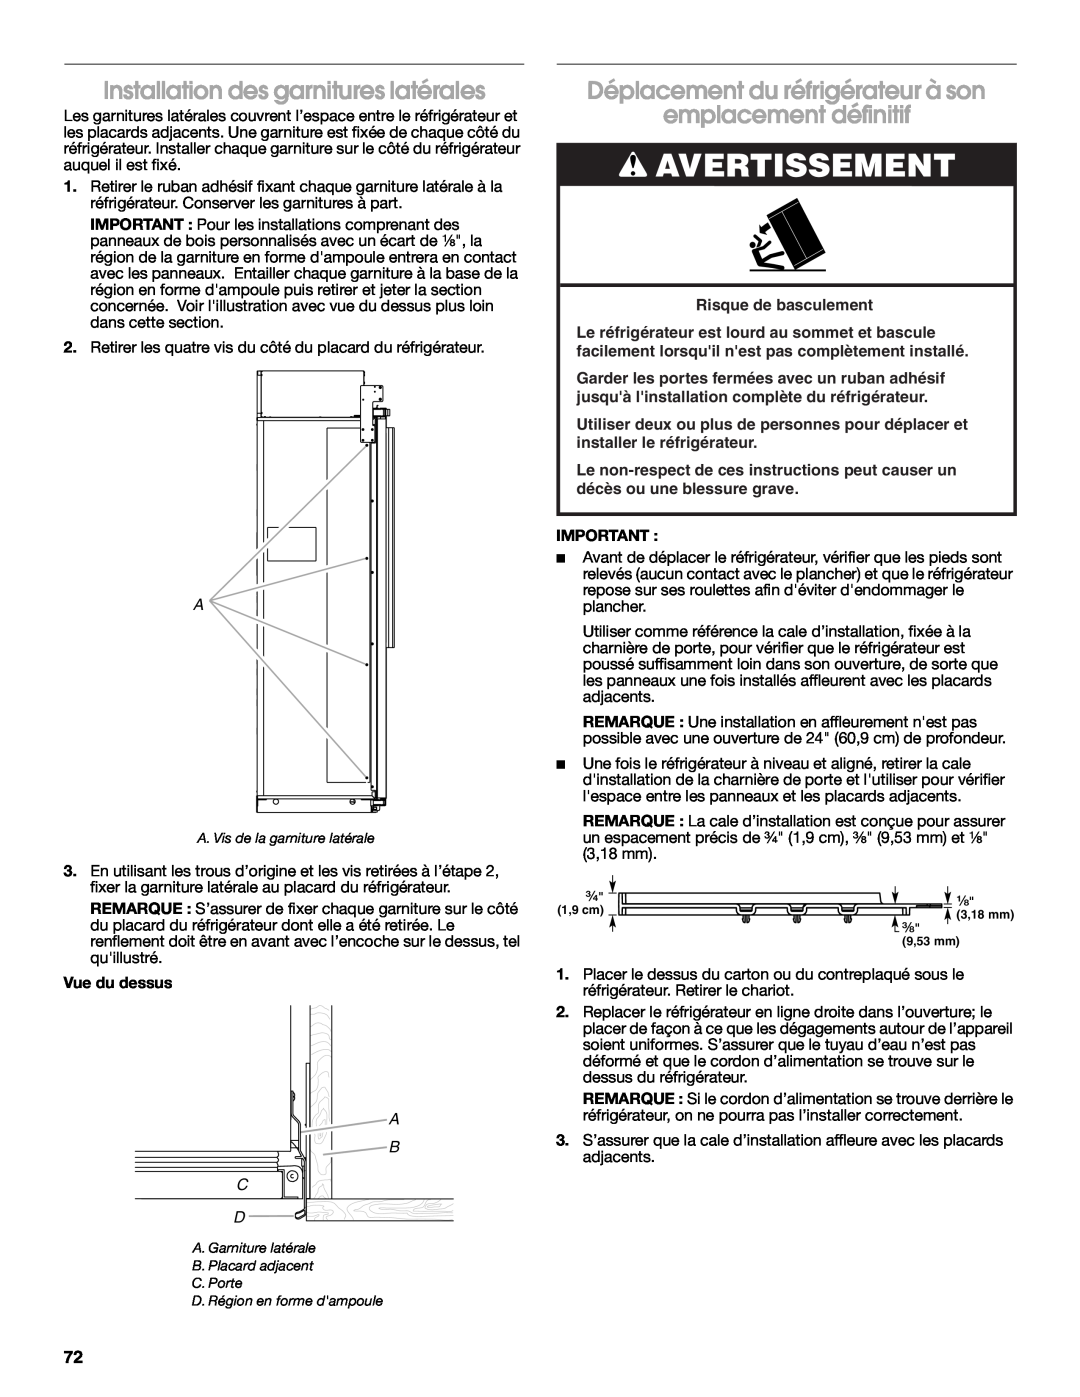 Jenn-Air W10379137A manual Installation des garnitures latérales, Déplacement du réfrigérateur à son, emplacement définitif 